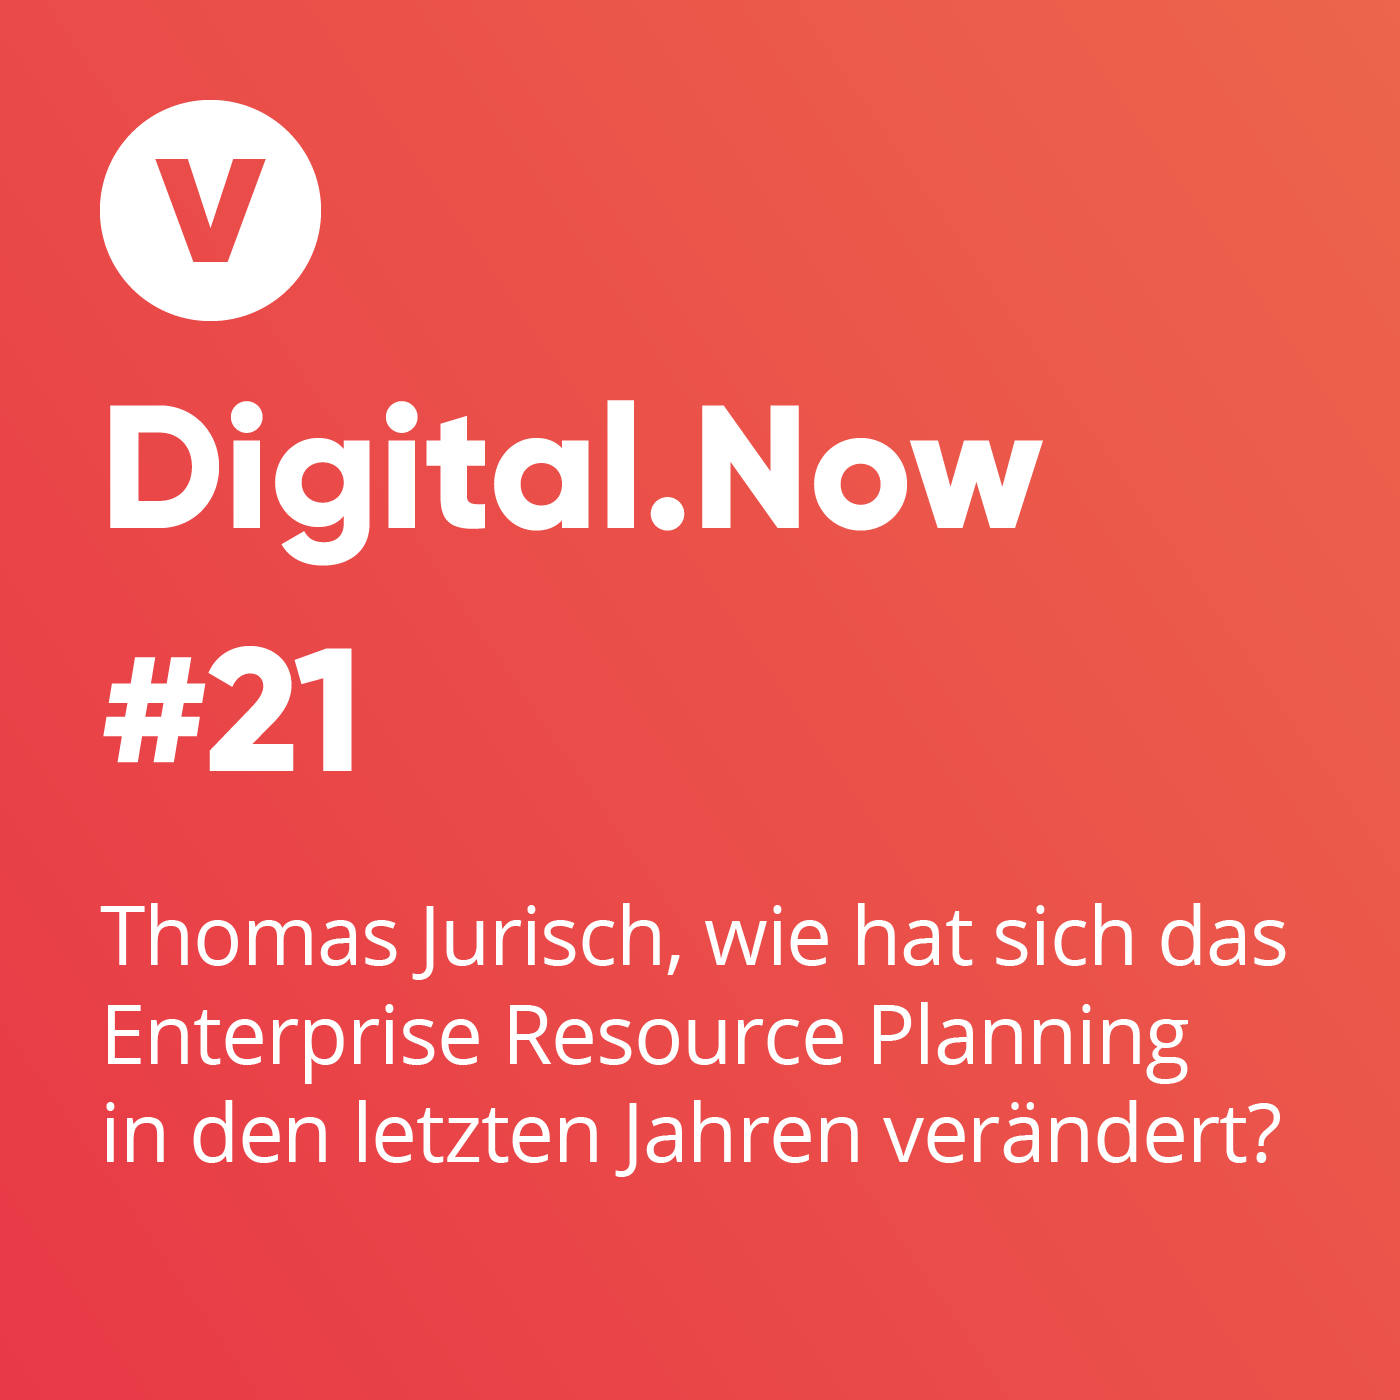 Thomas Jurisch, wie hat sich das Enterprise Resource Planning in den letzten Jahren verändert?